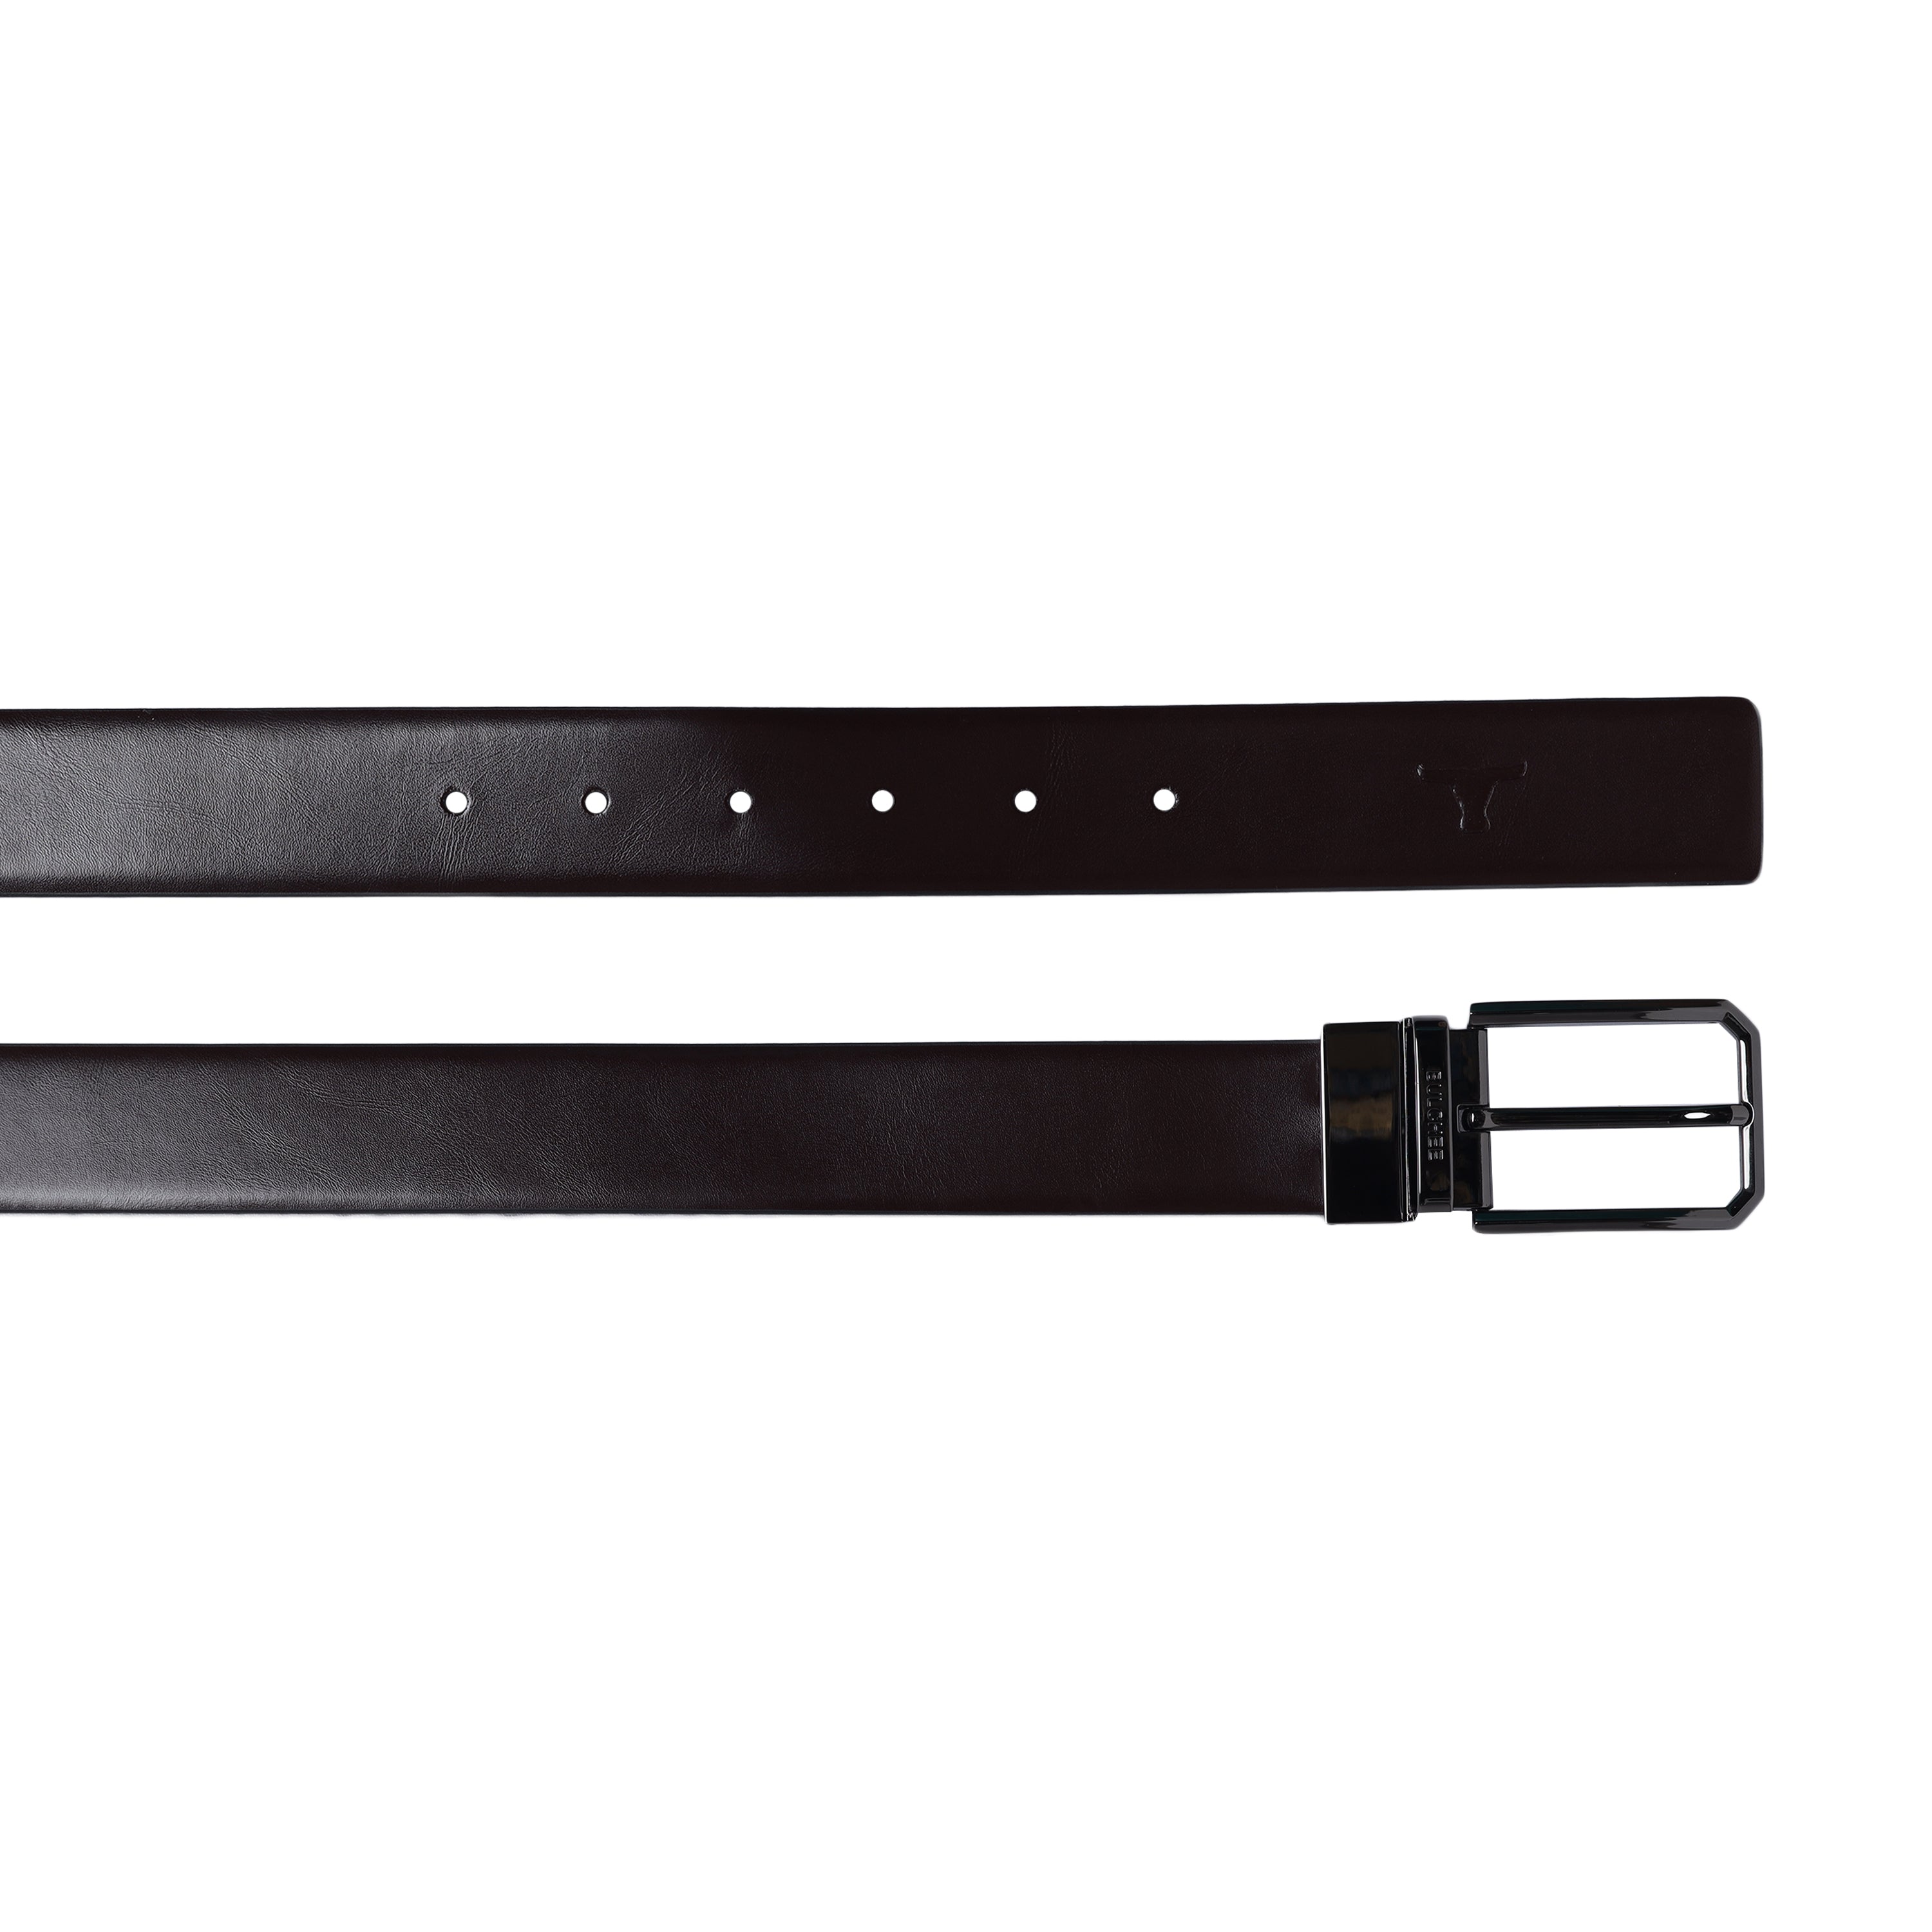 Bulchee Men's Genuine Leather Reversible Buckle Belt (Formal, Black/Brown) BUL2206B